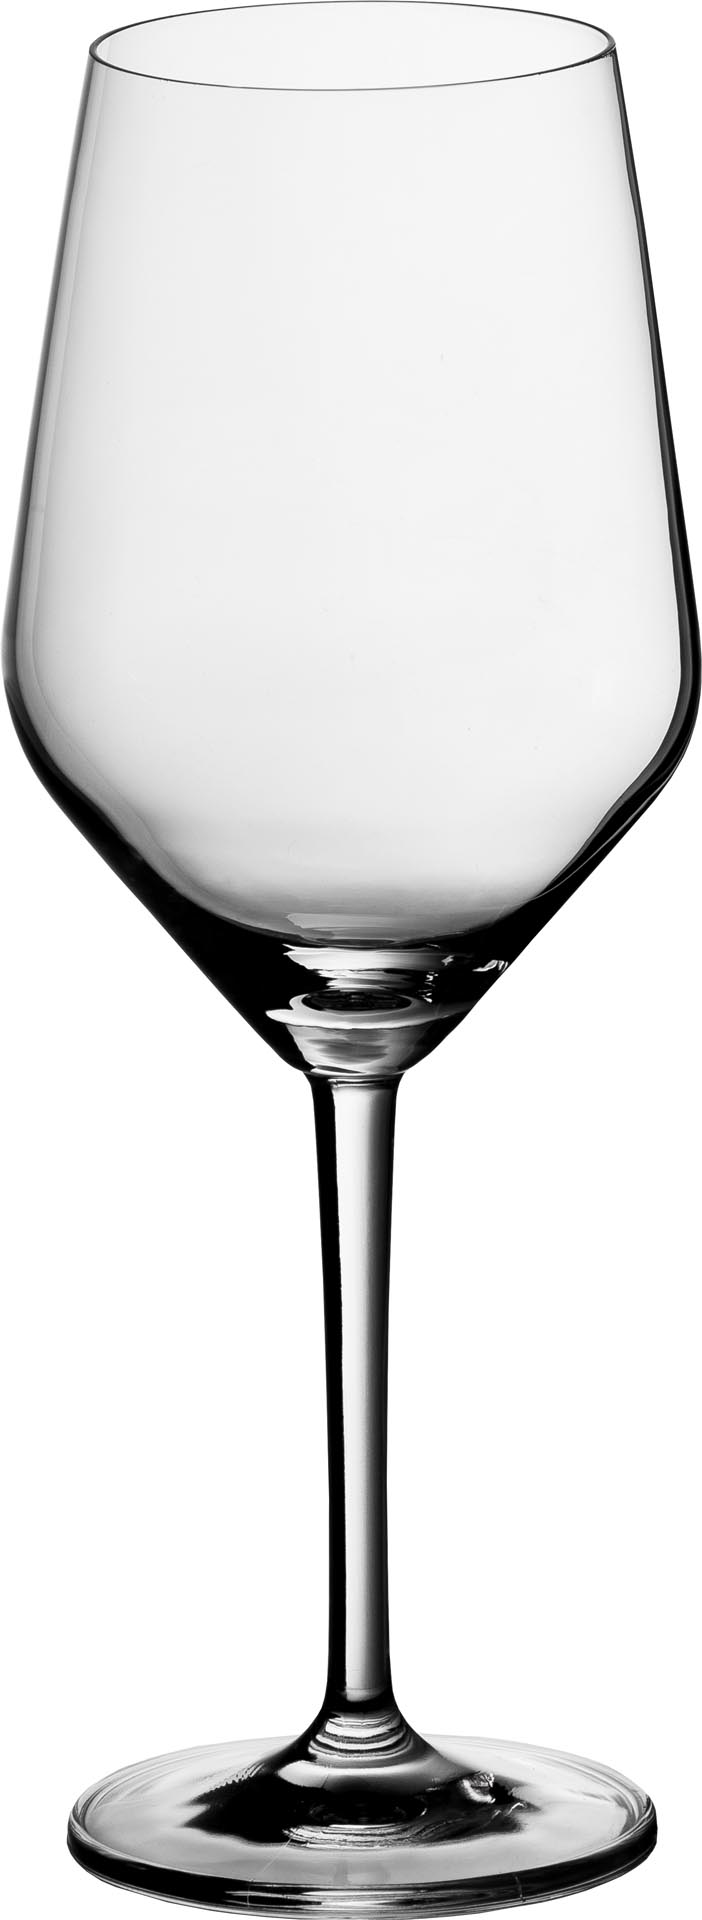 Glasserie ``CASTELLO`` Rotweinkelch /-/ 0,2L